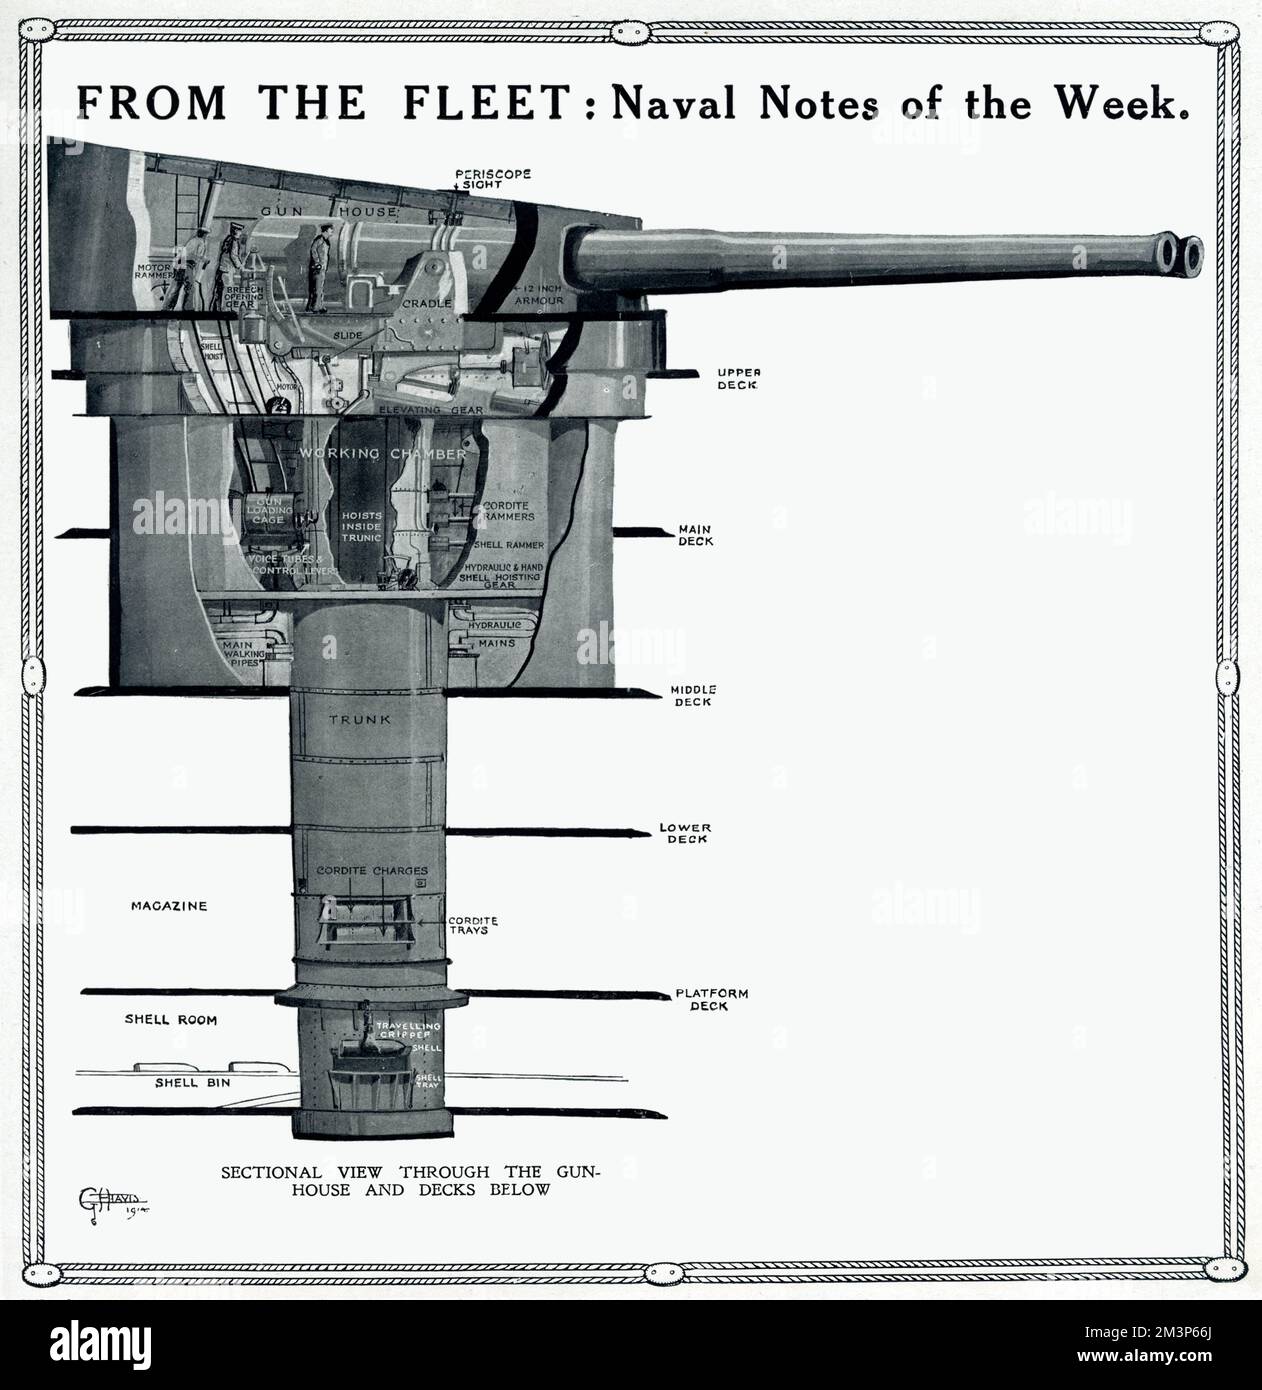 De la flotte: Notes navales de la semaine. Affichage d'une vue en coupe à travers un porte-canon d'un navire et les ponts en dessous. Banque D'Images